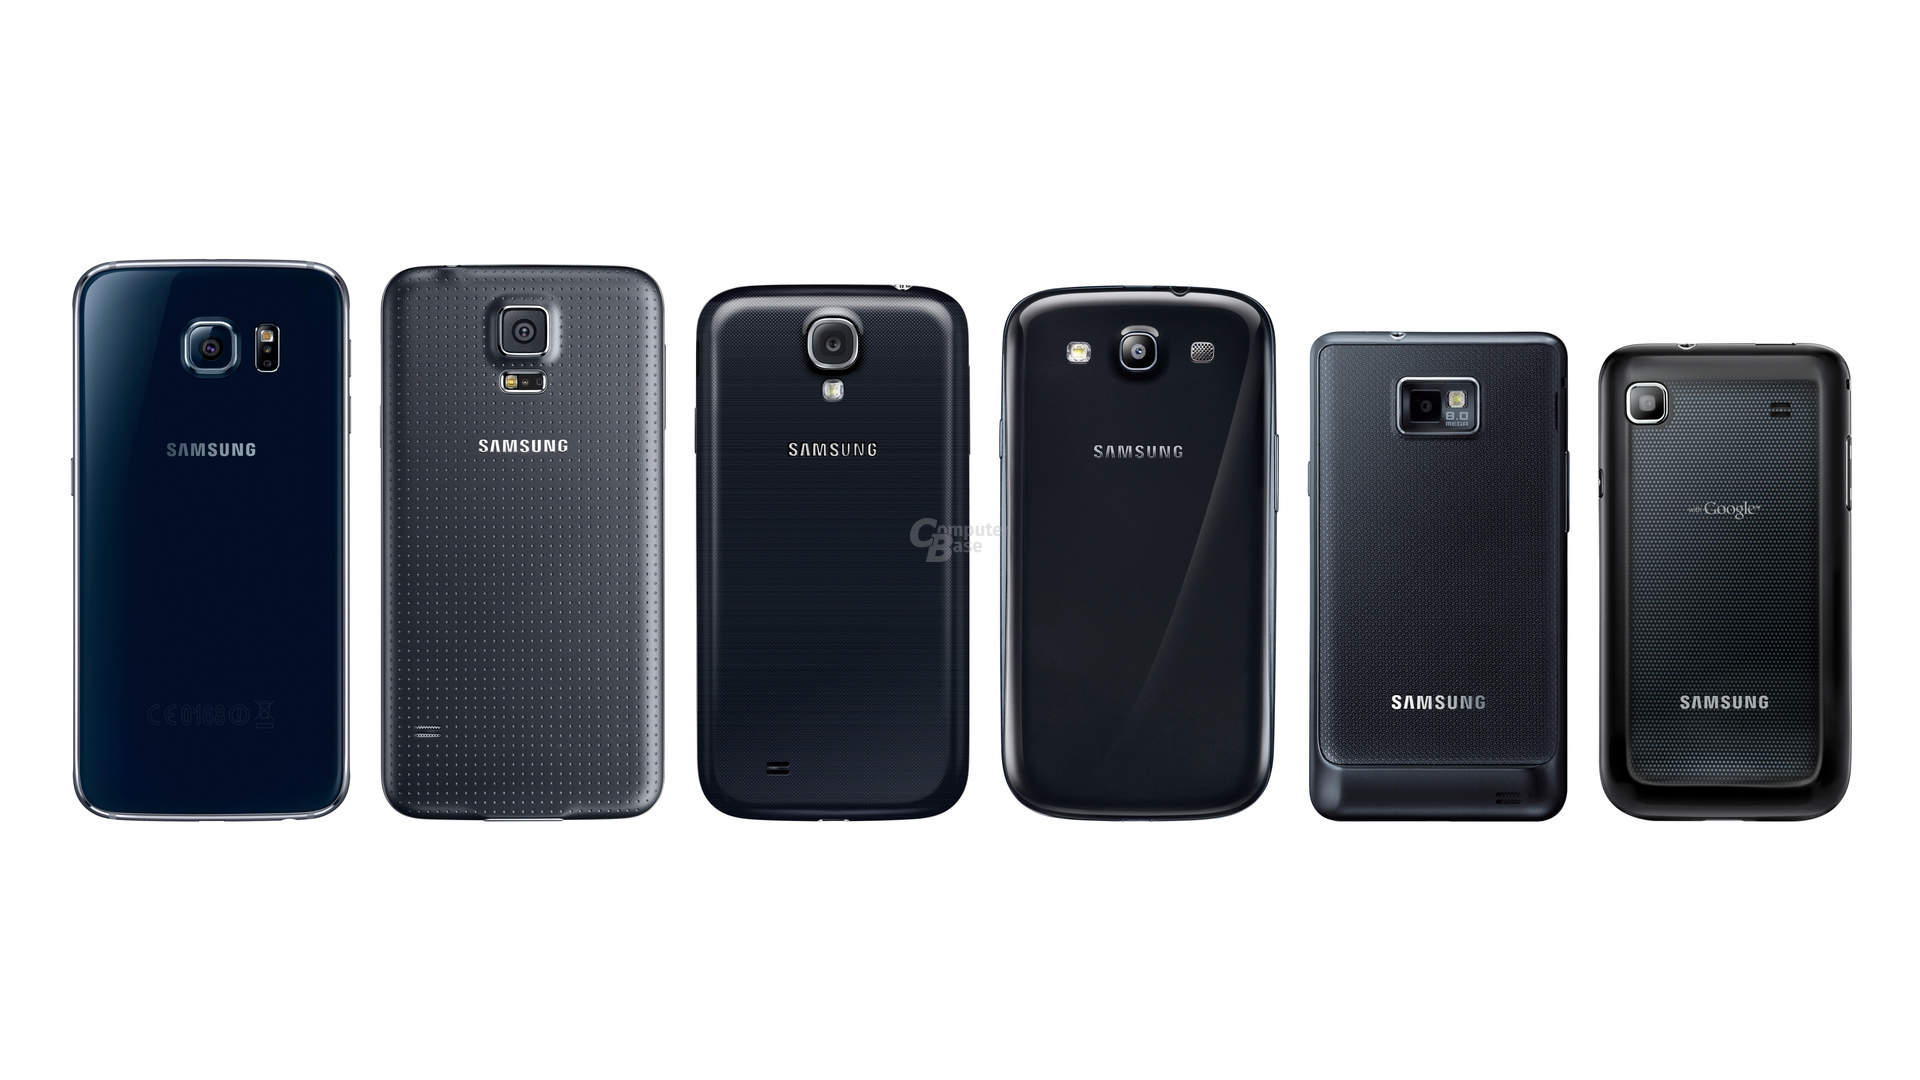 Samsung Galaxy S6 – Galaxy S